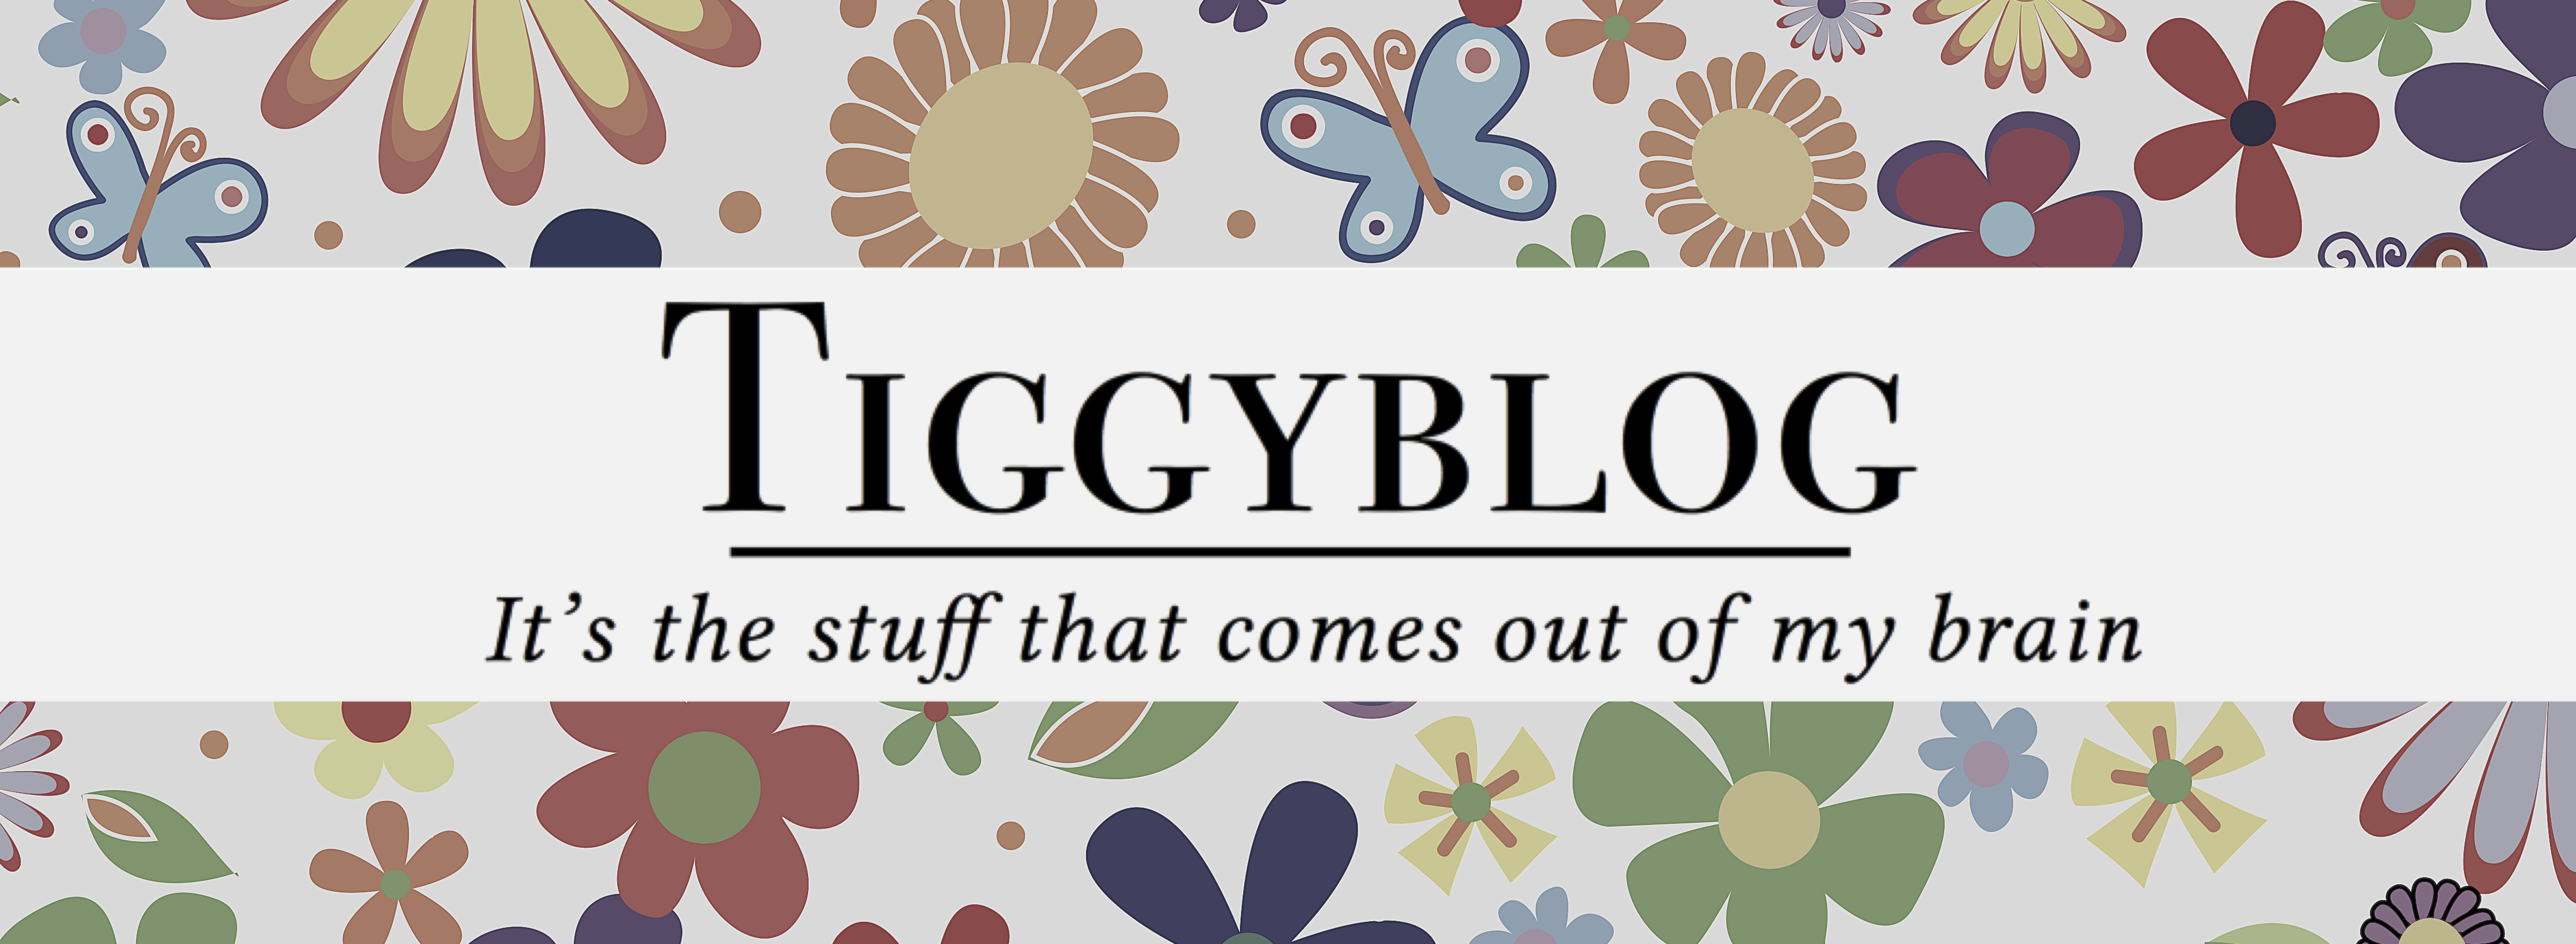 Tiggyblog